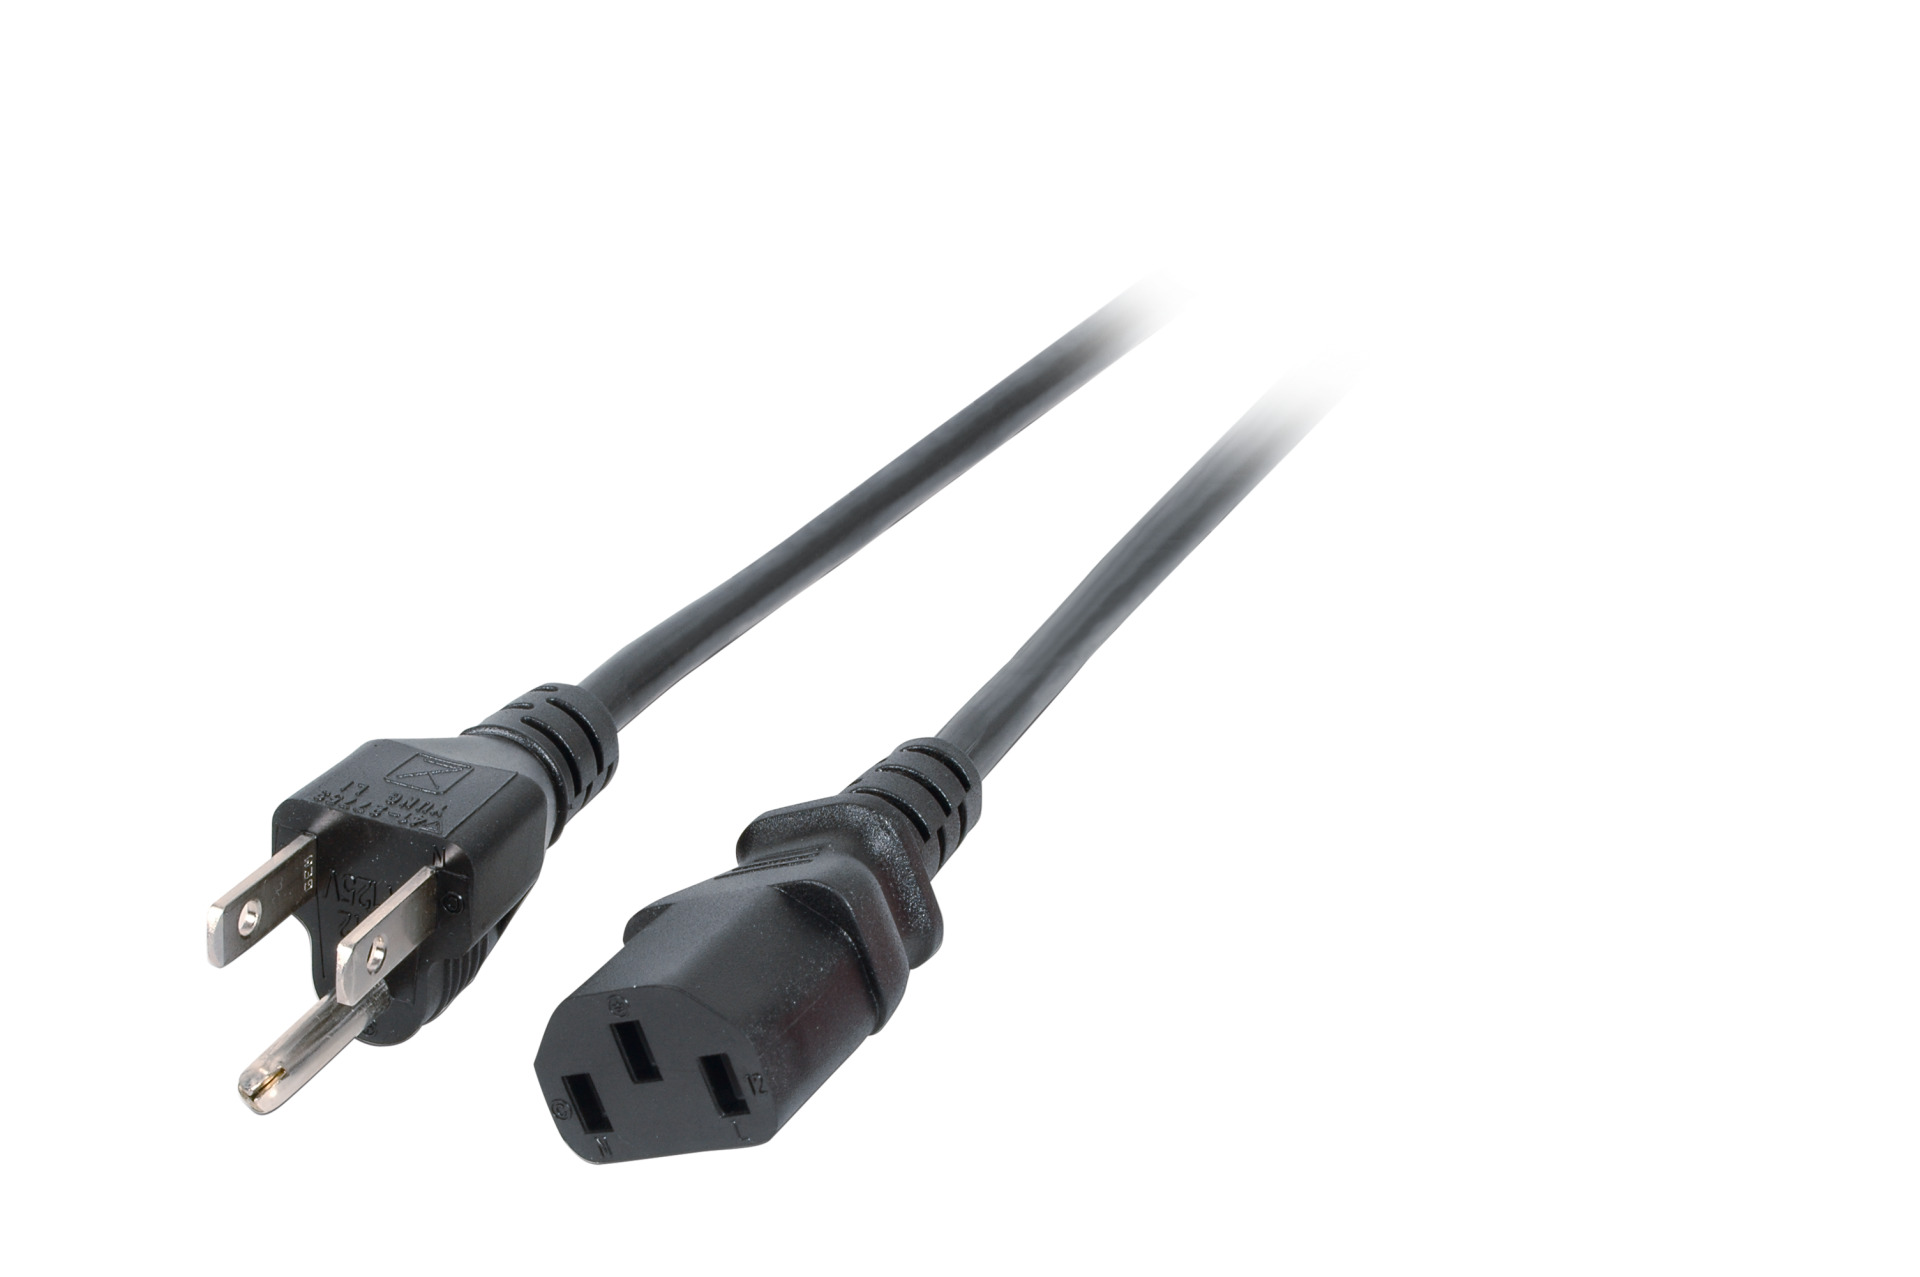 Power Cable USA/NEMA 5-15P - C13 180°, Black, 1.8 m, SVT AWG18 x 3C